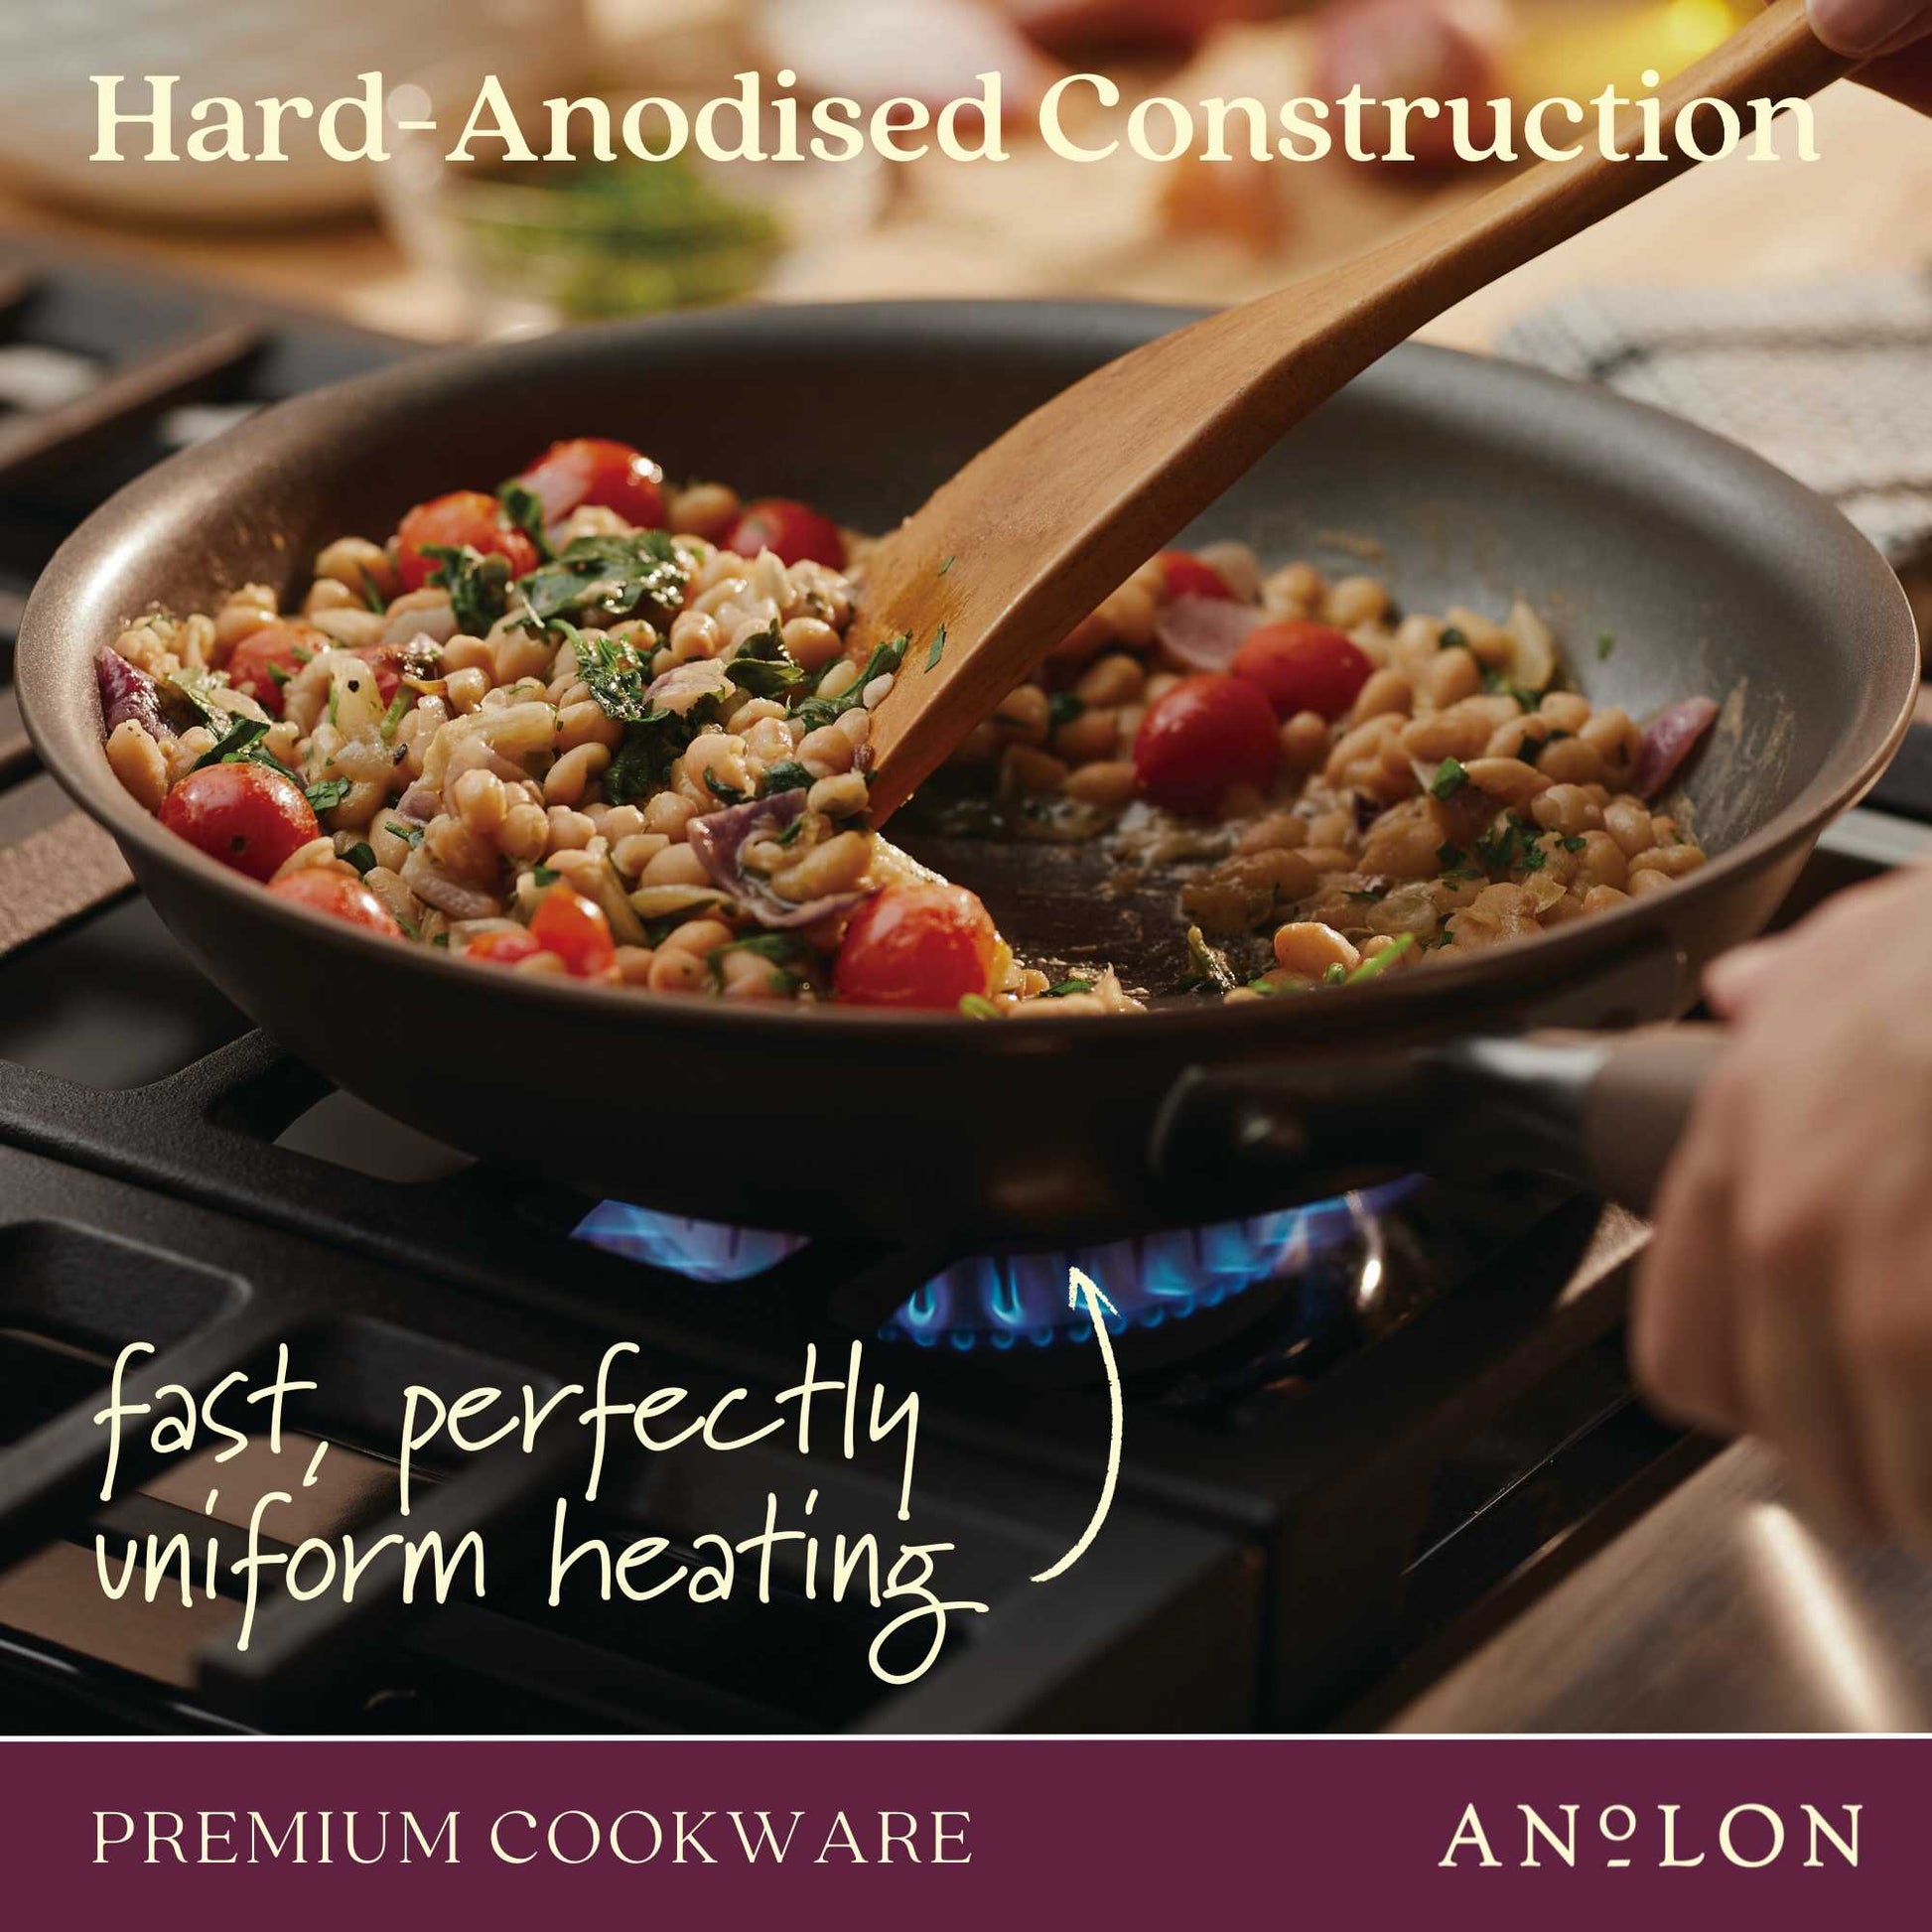 Anolon, Advanced Home Nonstick 11-Piece Cookware Set